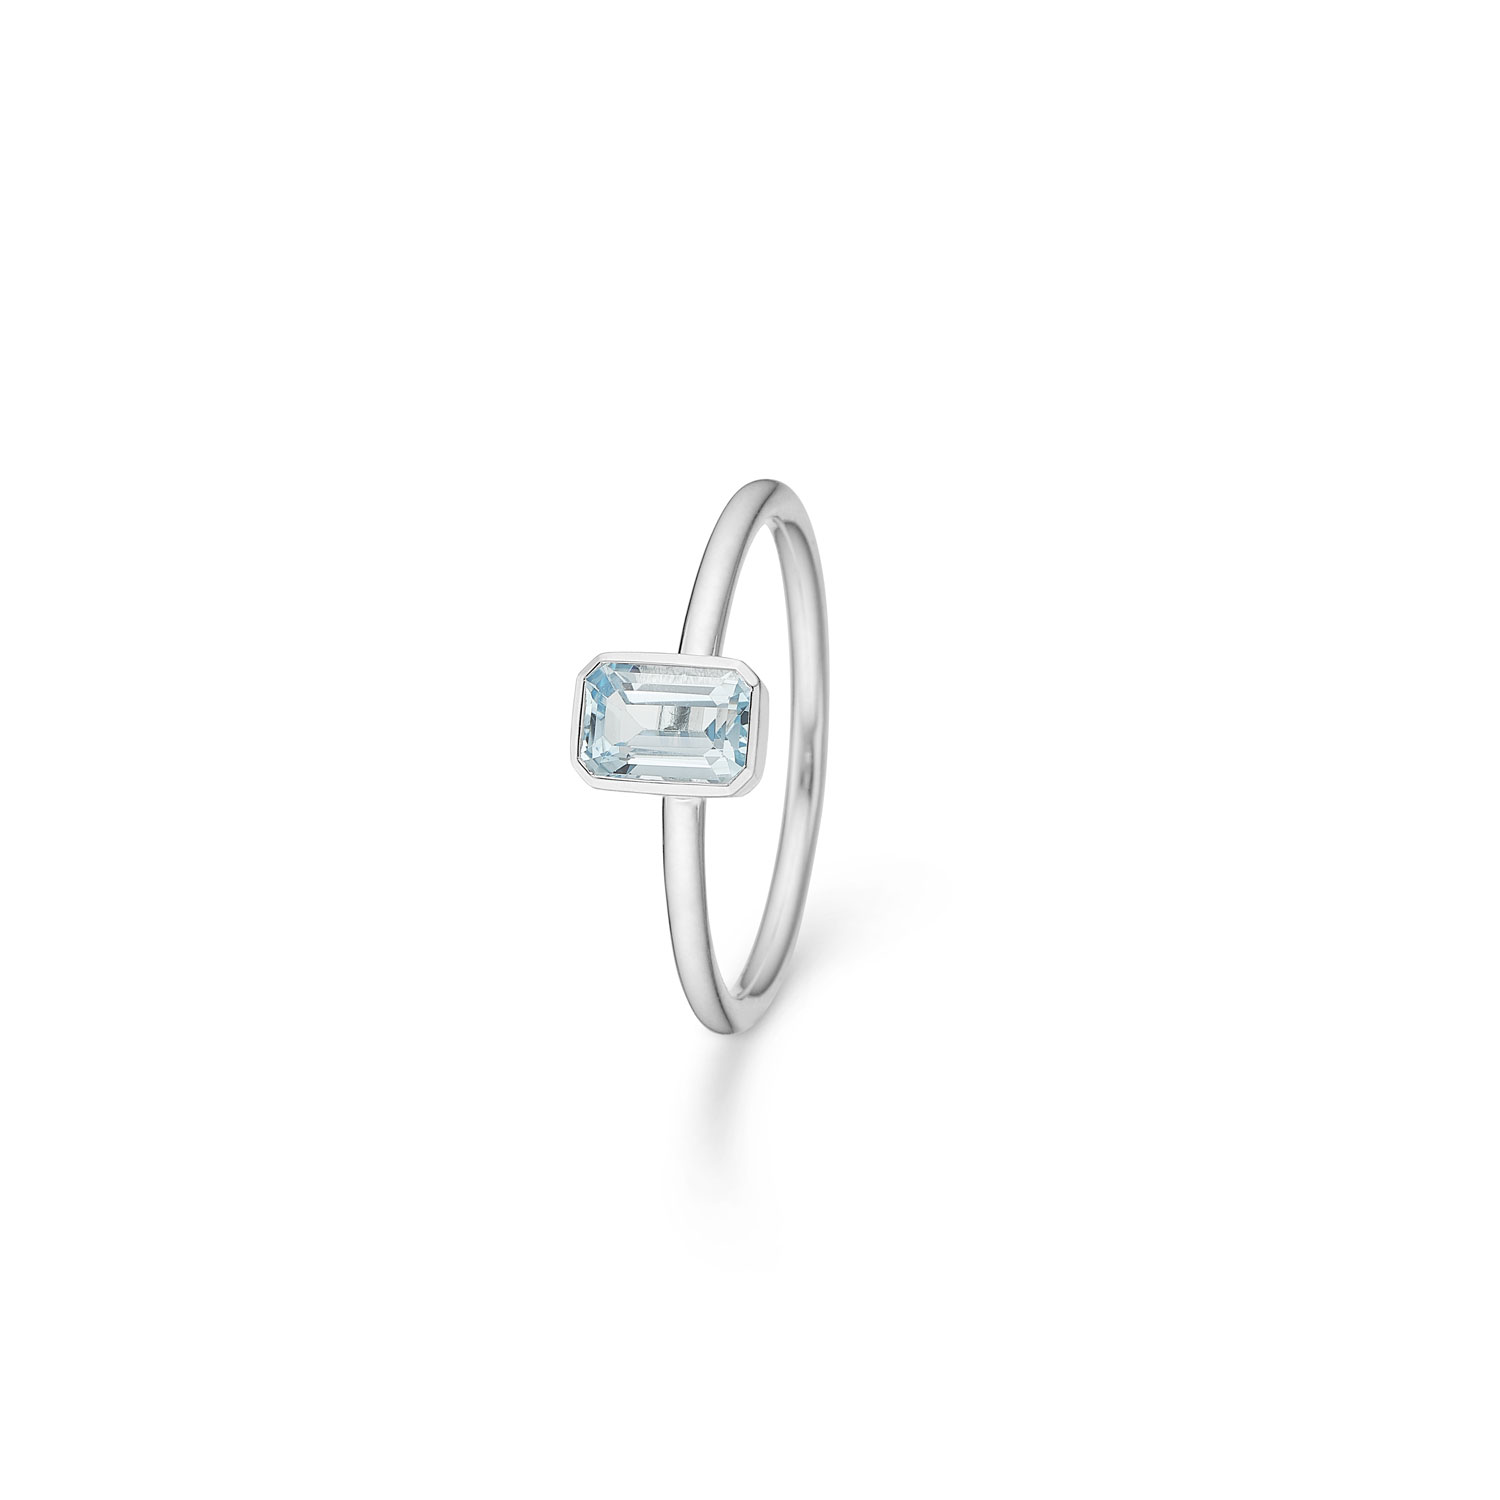 Mads Z Aurora ring, blå topas - 2146501 Sølv m. blå topas 54